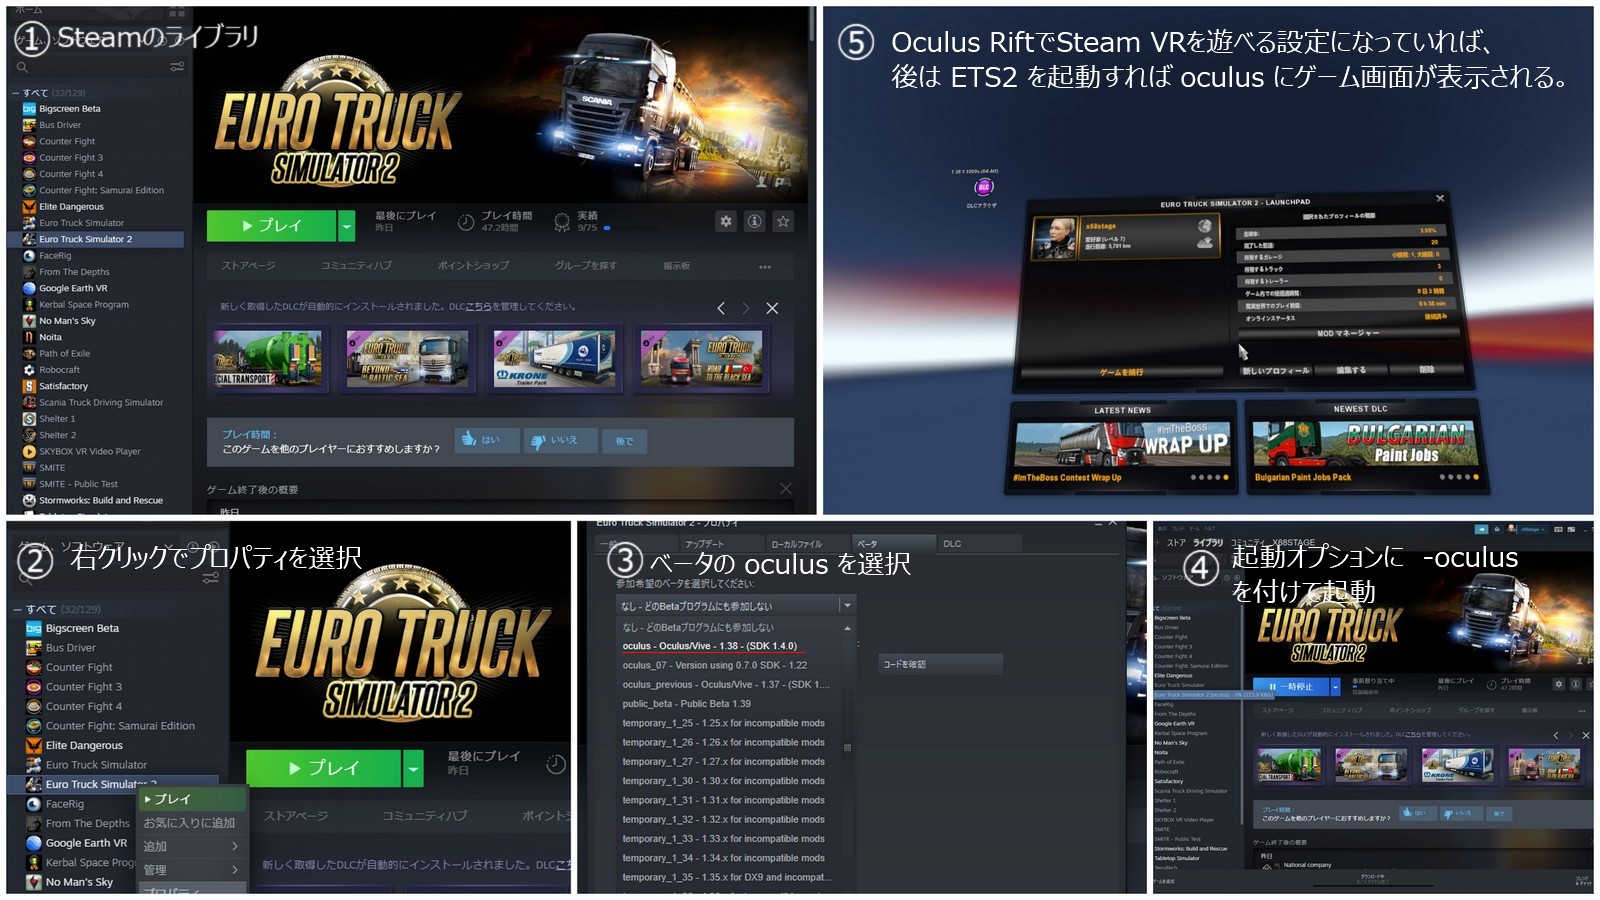 Oculus RiftでEuro Truck Simulator2を遊ぶ   by くるみさん 1600 x 900